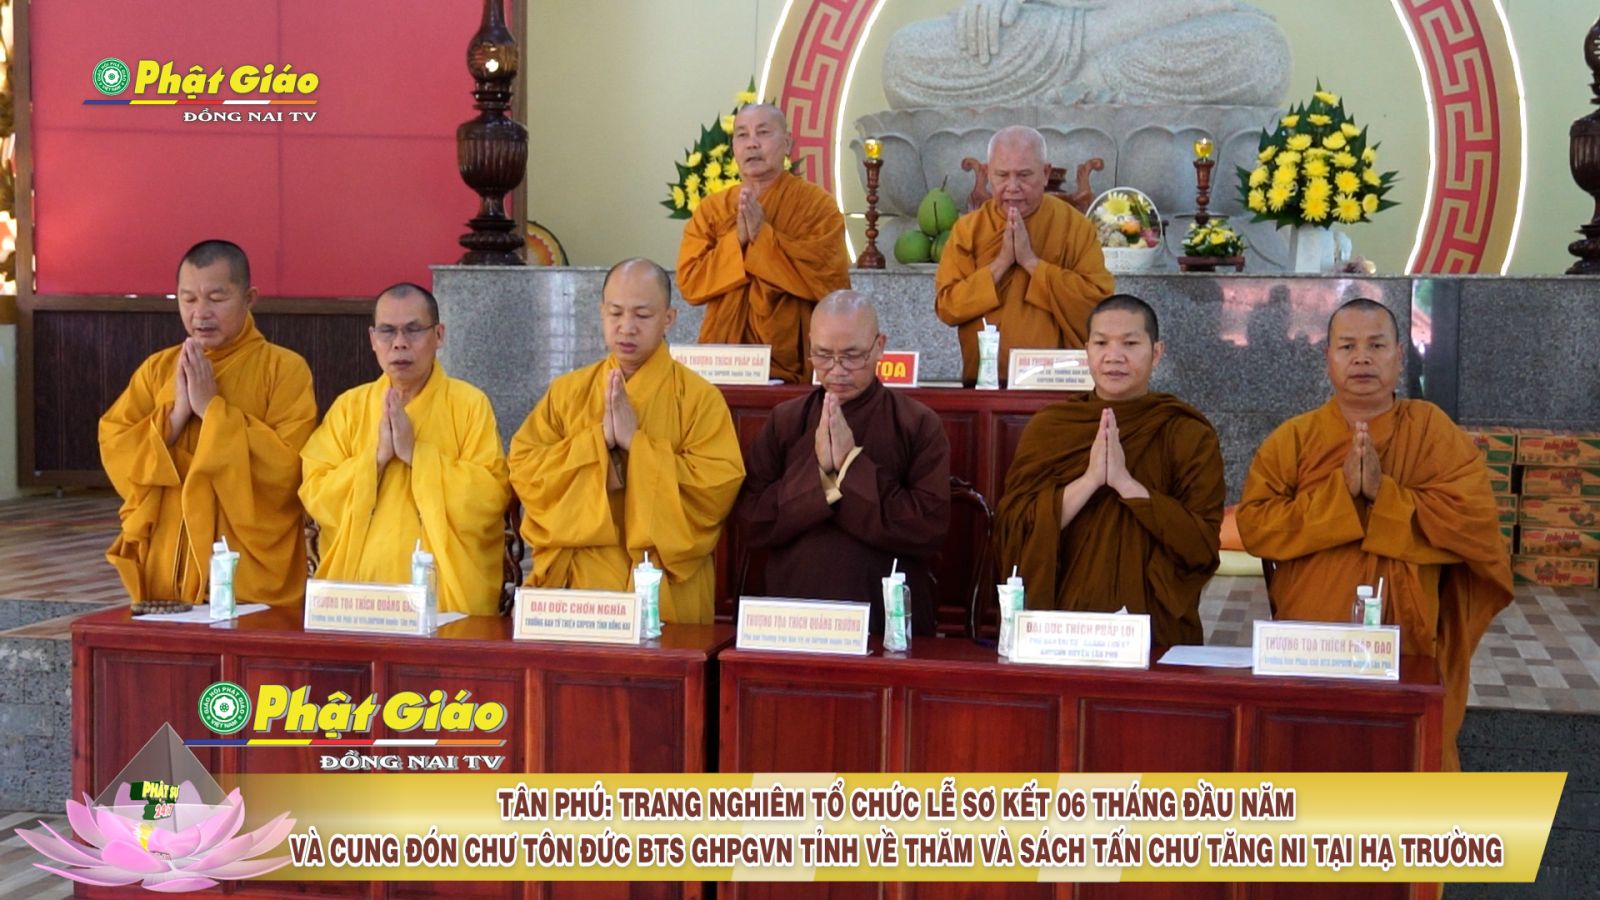 [Video] Tân Phú: Lễ sơ kết Phật sự 06 tháng đầu năm & đón Chư tôn đức BTS GHPGVN tỉnh thăm hạ trường An cư.